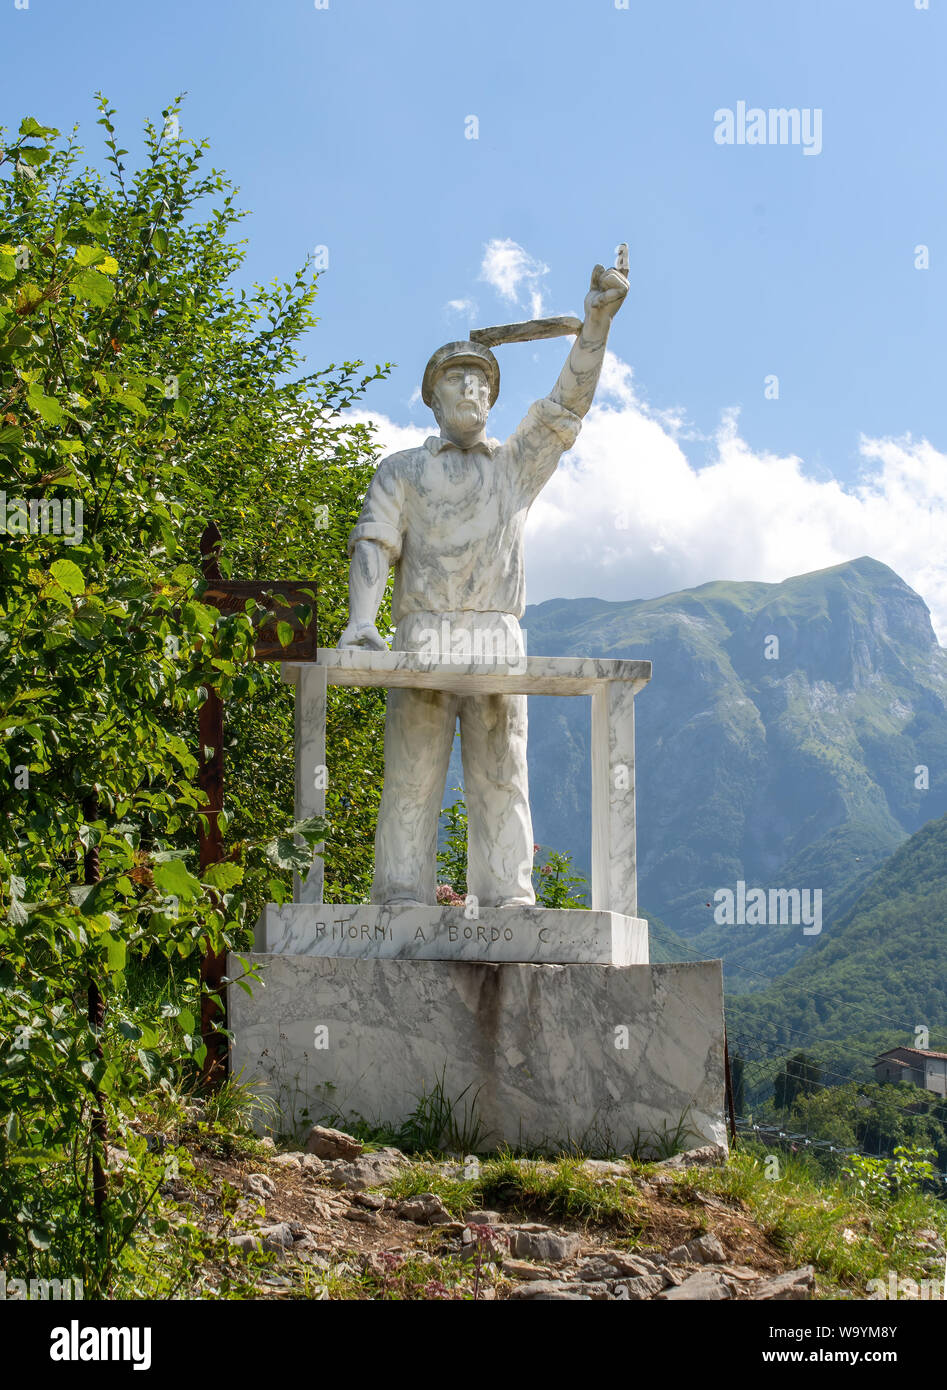 VAGLI SOTTO, LUCCA, ITALY AUGUST 8, 2019: A marble statue of Gregorio De Falco, the coastguard involved in the Costa Concordia cruise ship event. Stock Photo